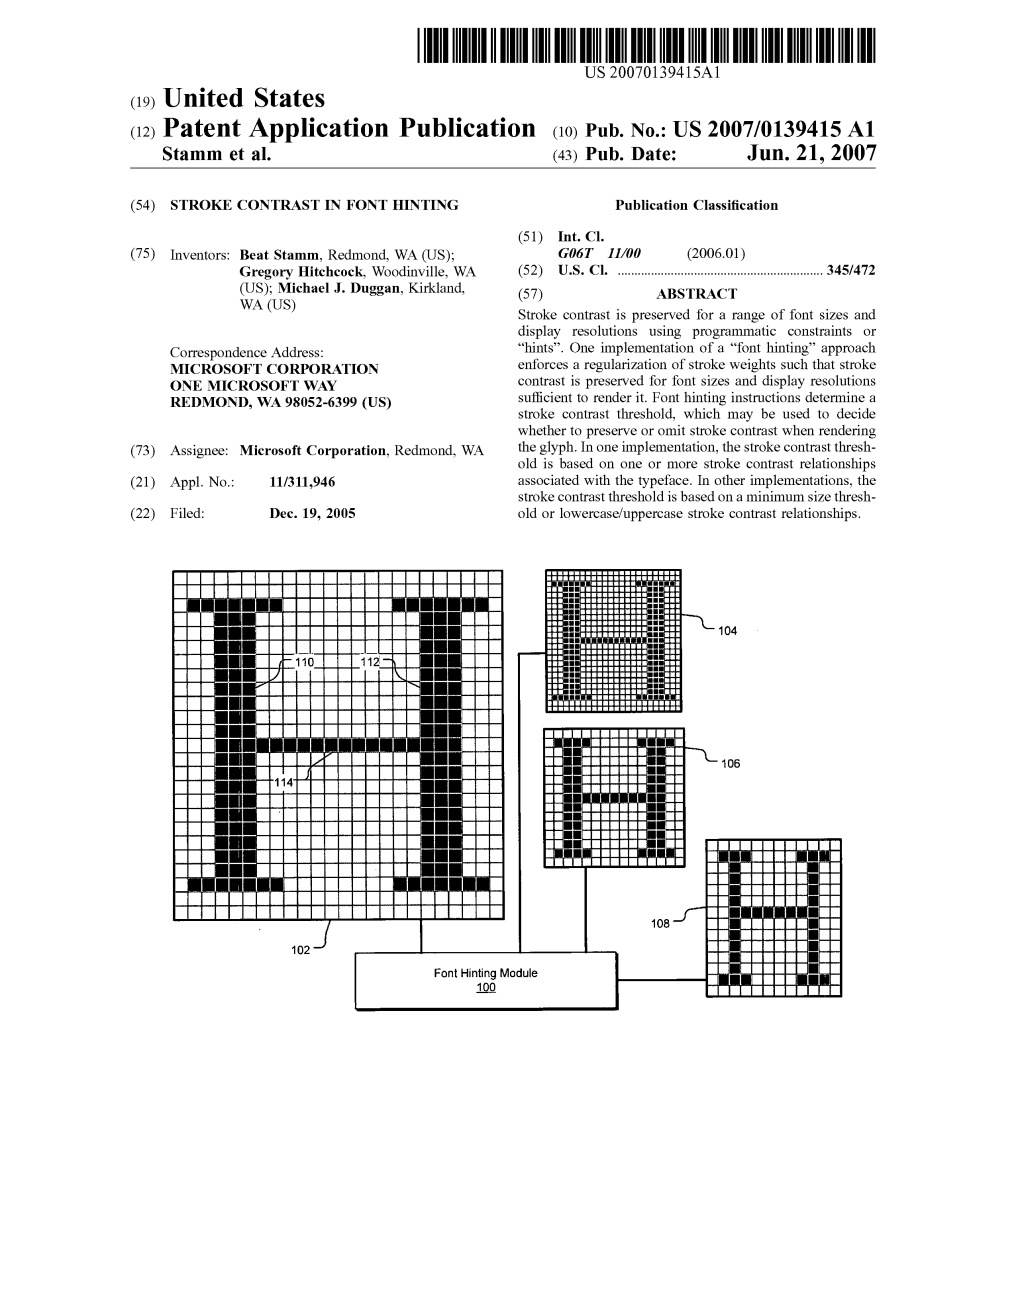 (12) Patent Application Publication (10) Pub. No.: US 2007/01394.15 A1 Stamm Et Al